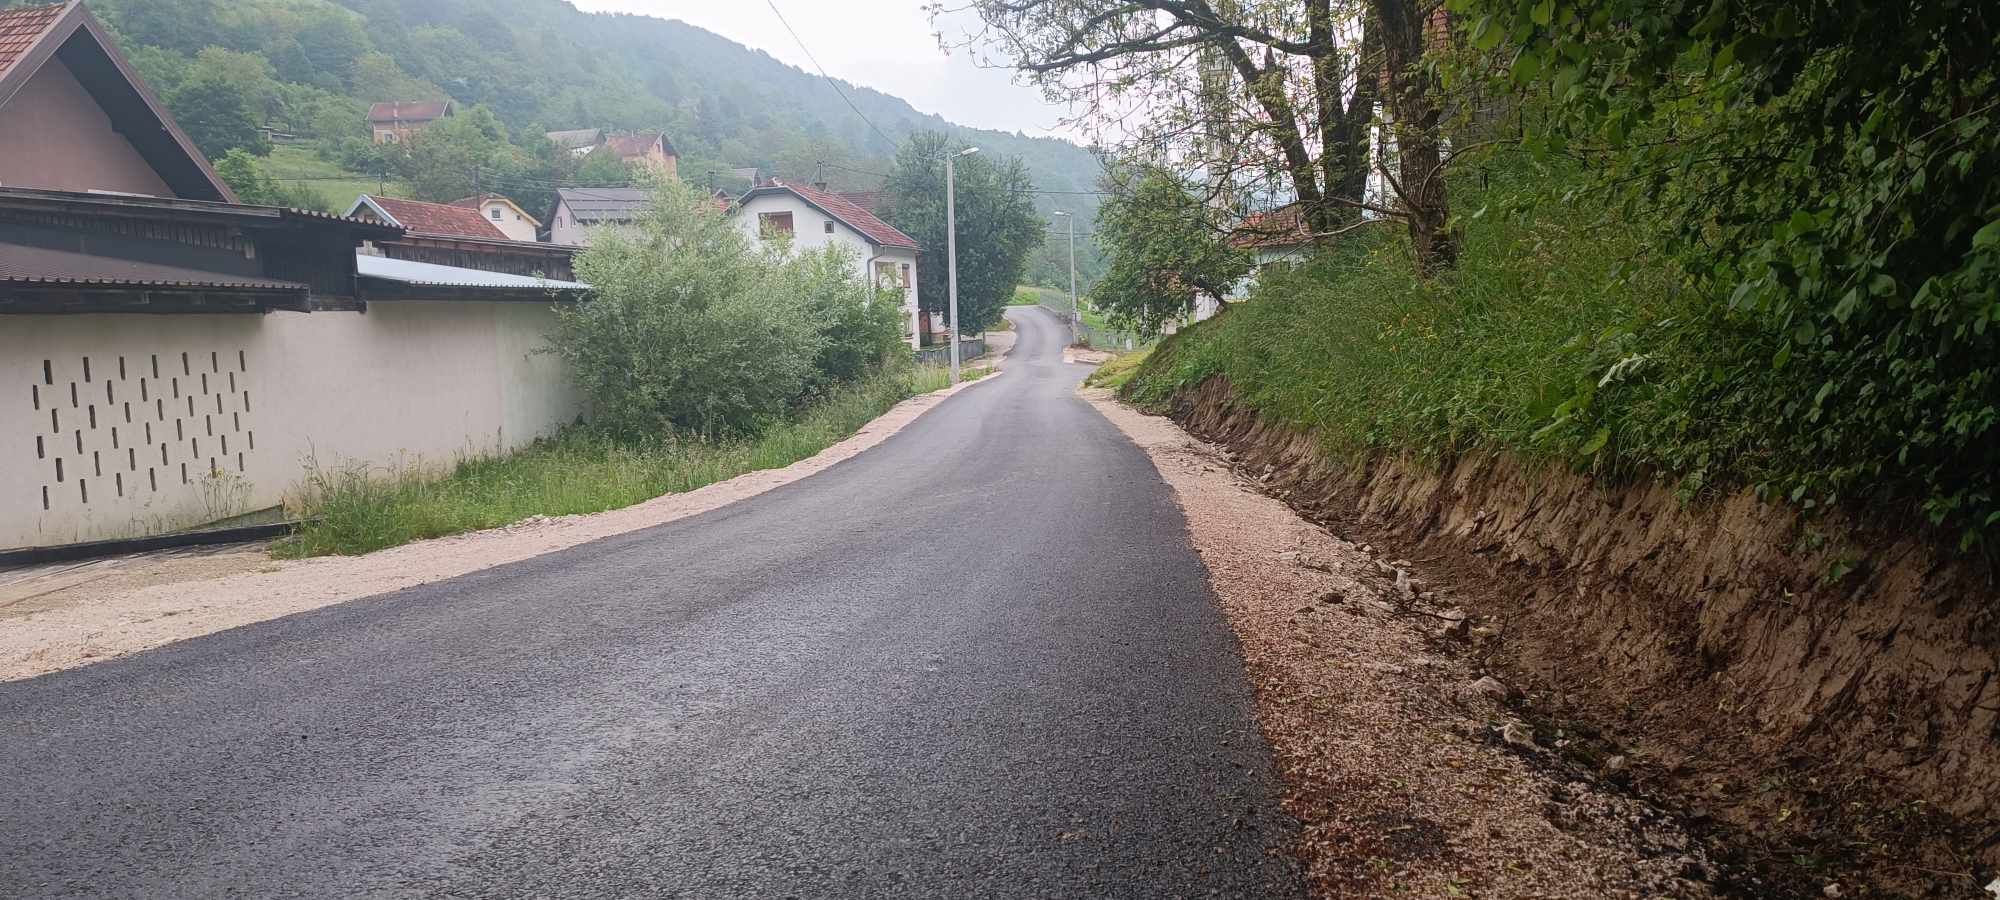 Završena I. faza rekonstrukcije lokalnog puta Ramići - Drmaći. Asfaltirano preko 1400 metara ceste